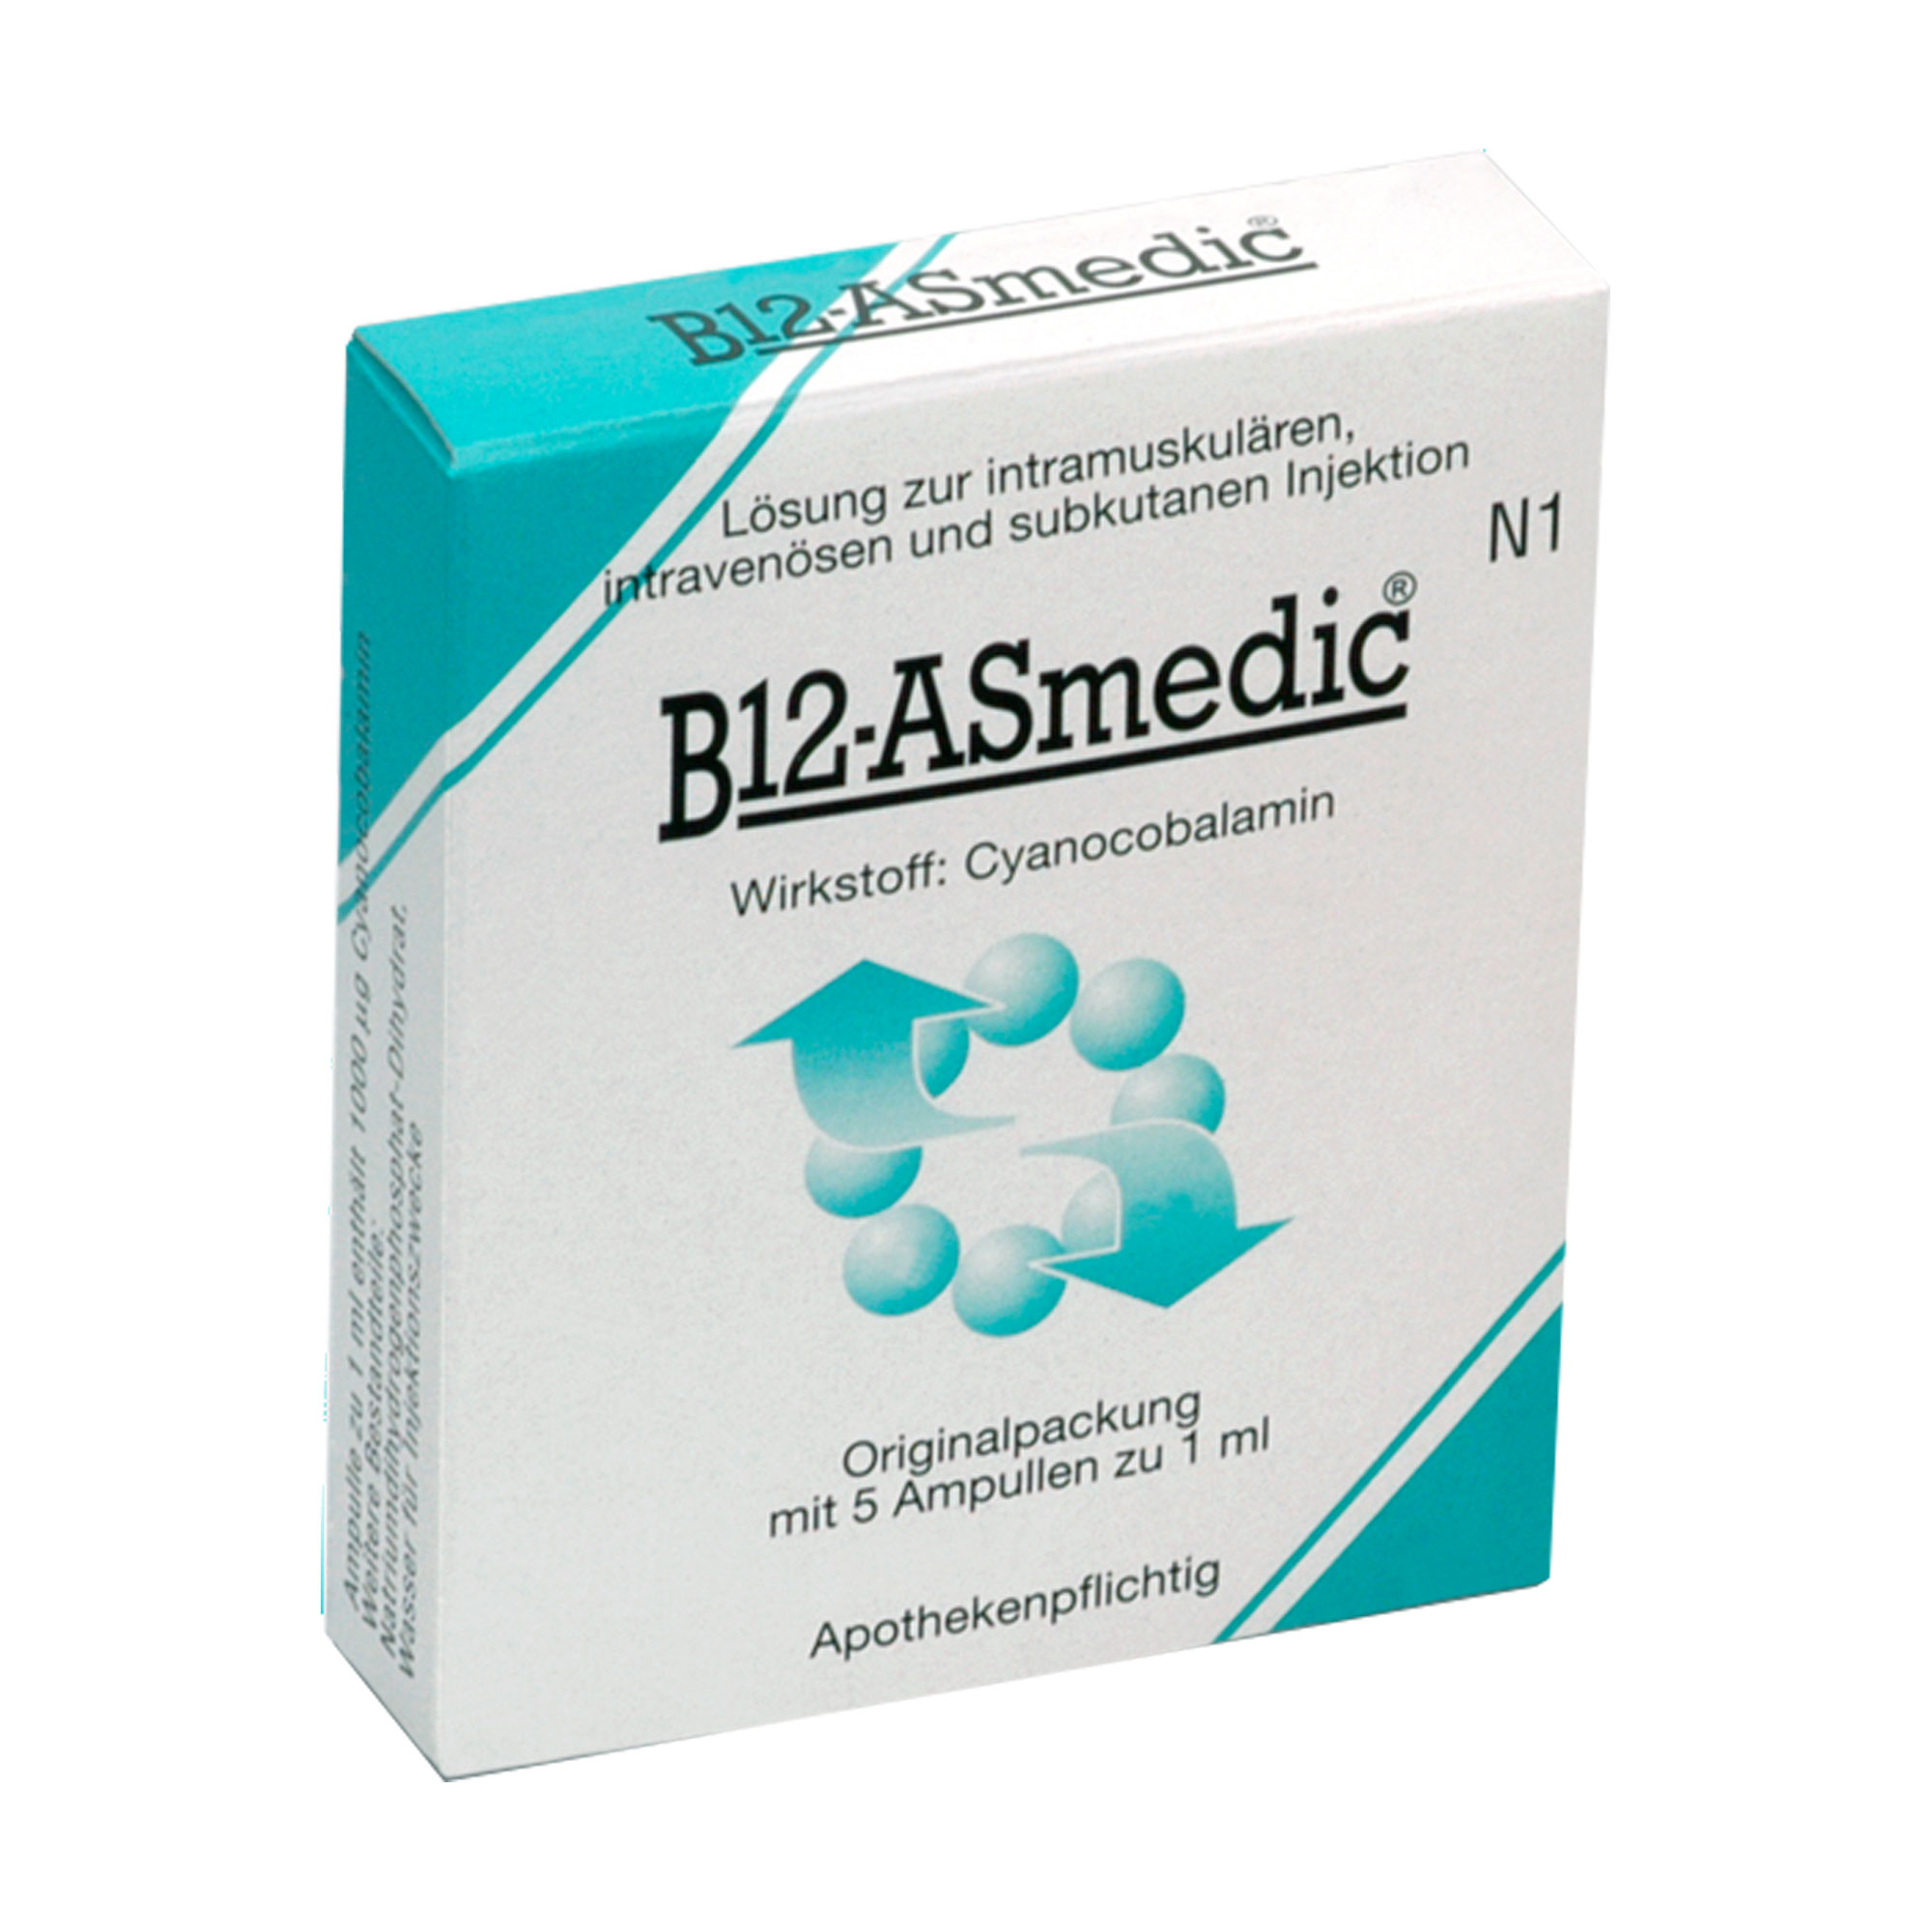 Lösung zur intramuskulären, intravenösen und subkutanen Injektion bei Vitamin-B12-Mangel.